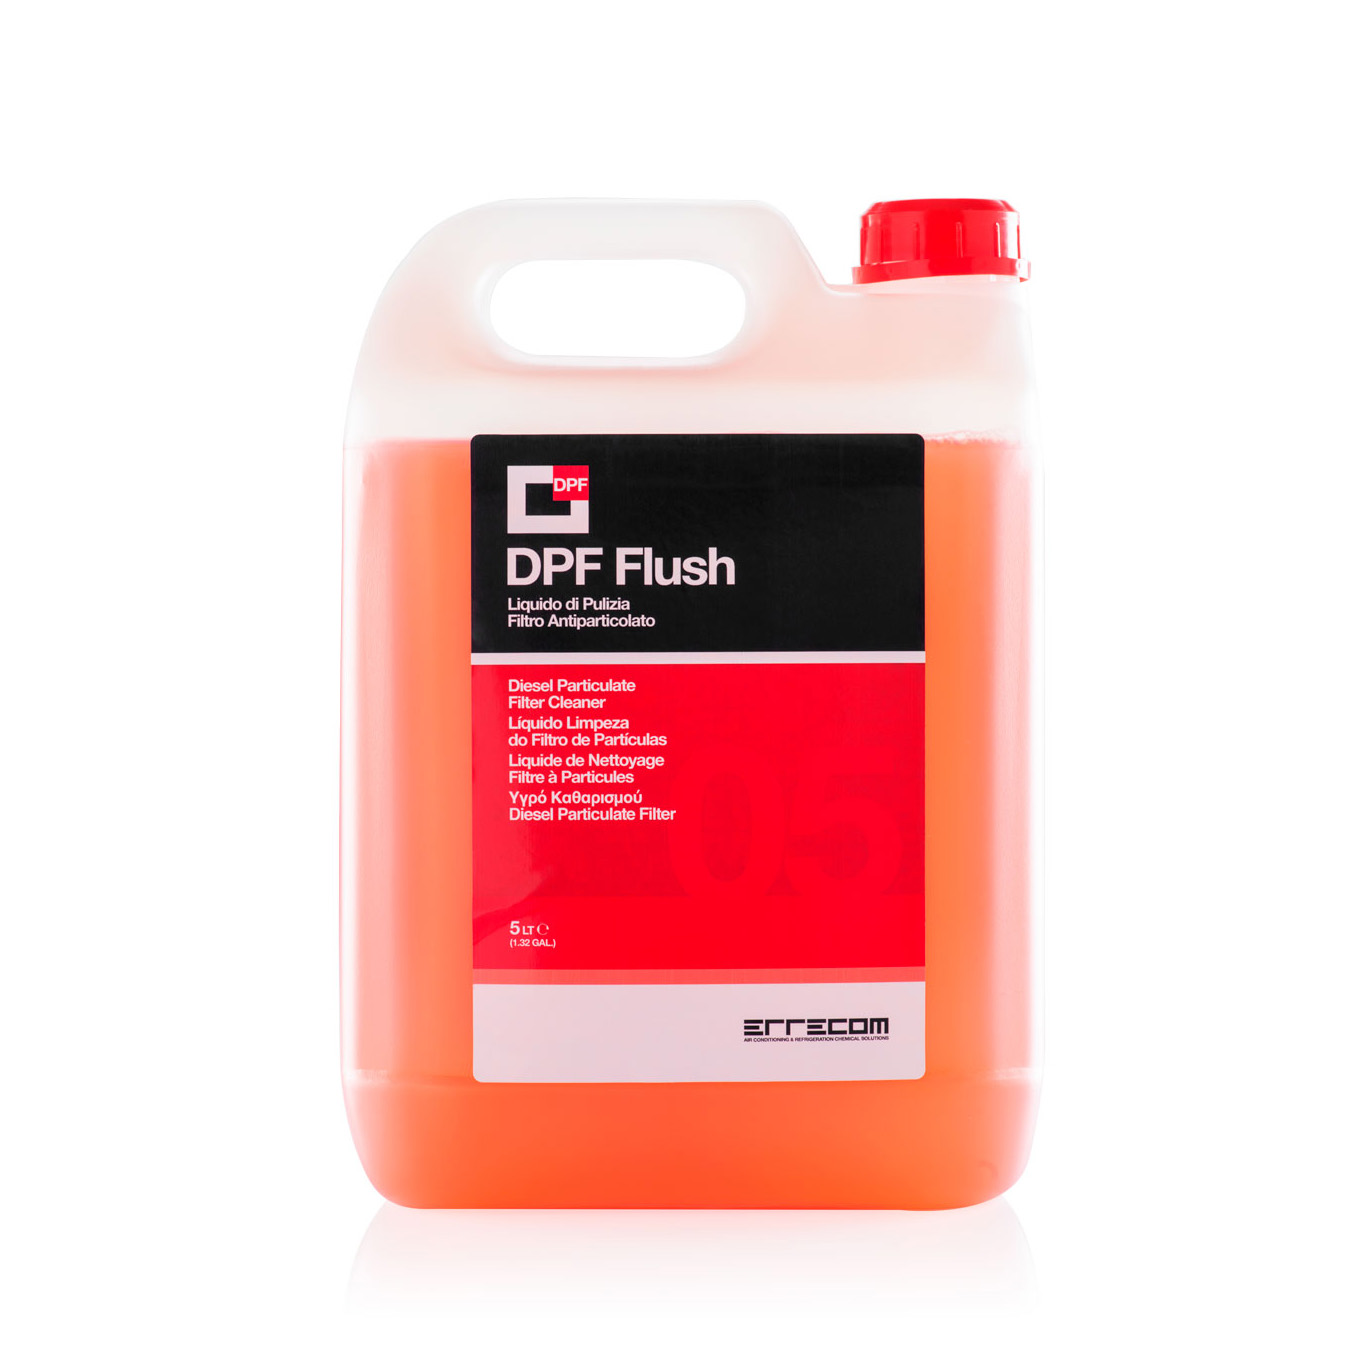 DPF FLUSH Liquido per la Pulizia dei Filtri Antiparticolato Diesel - 5 litri - Confezione n° 2 pezzi